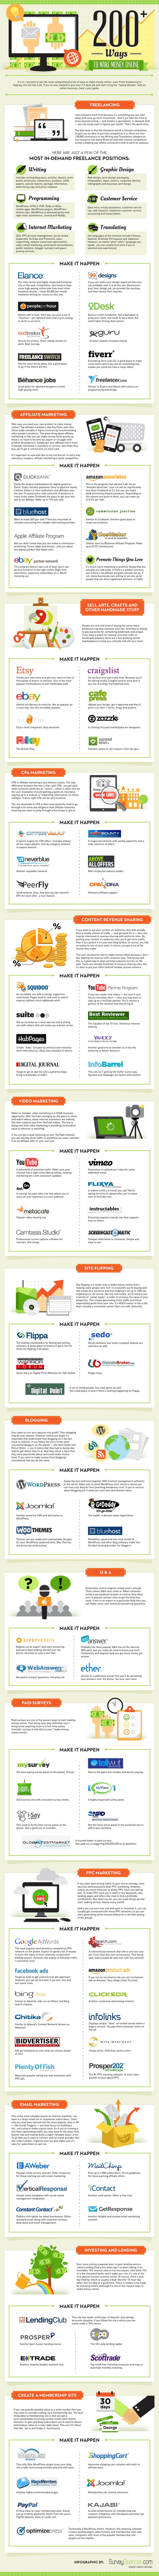 Ways Make Money Online Infographic